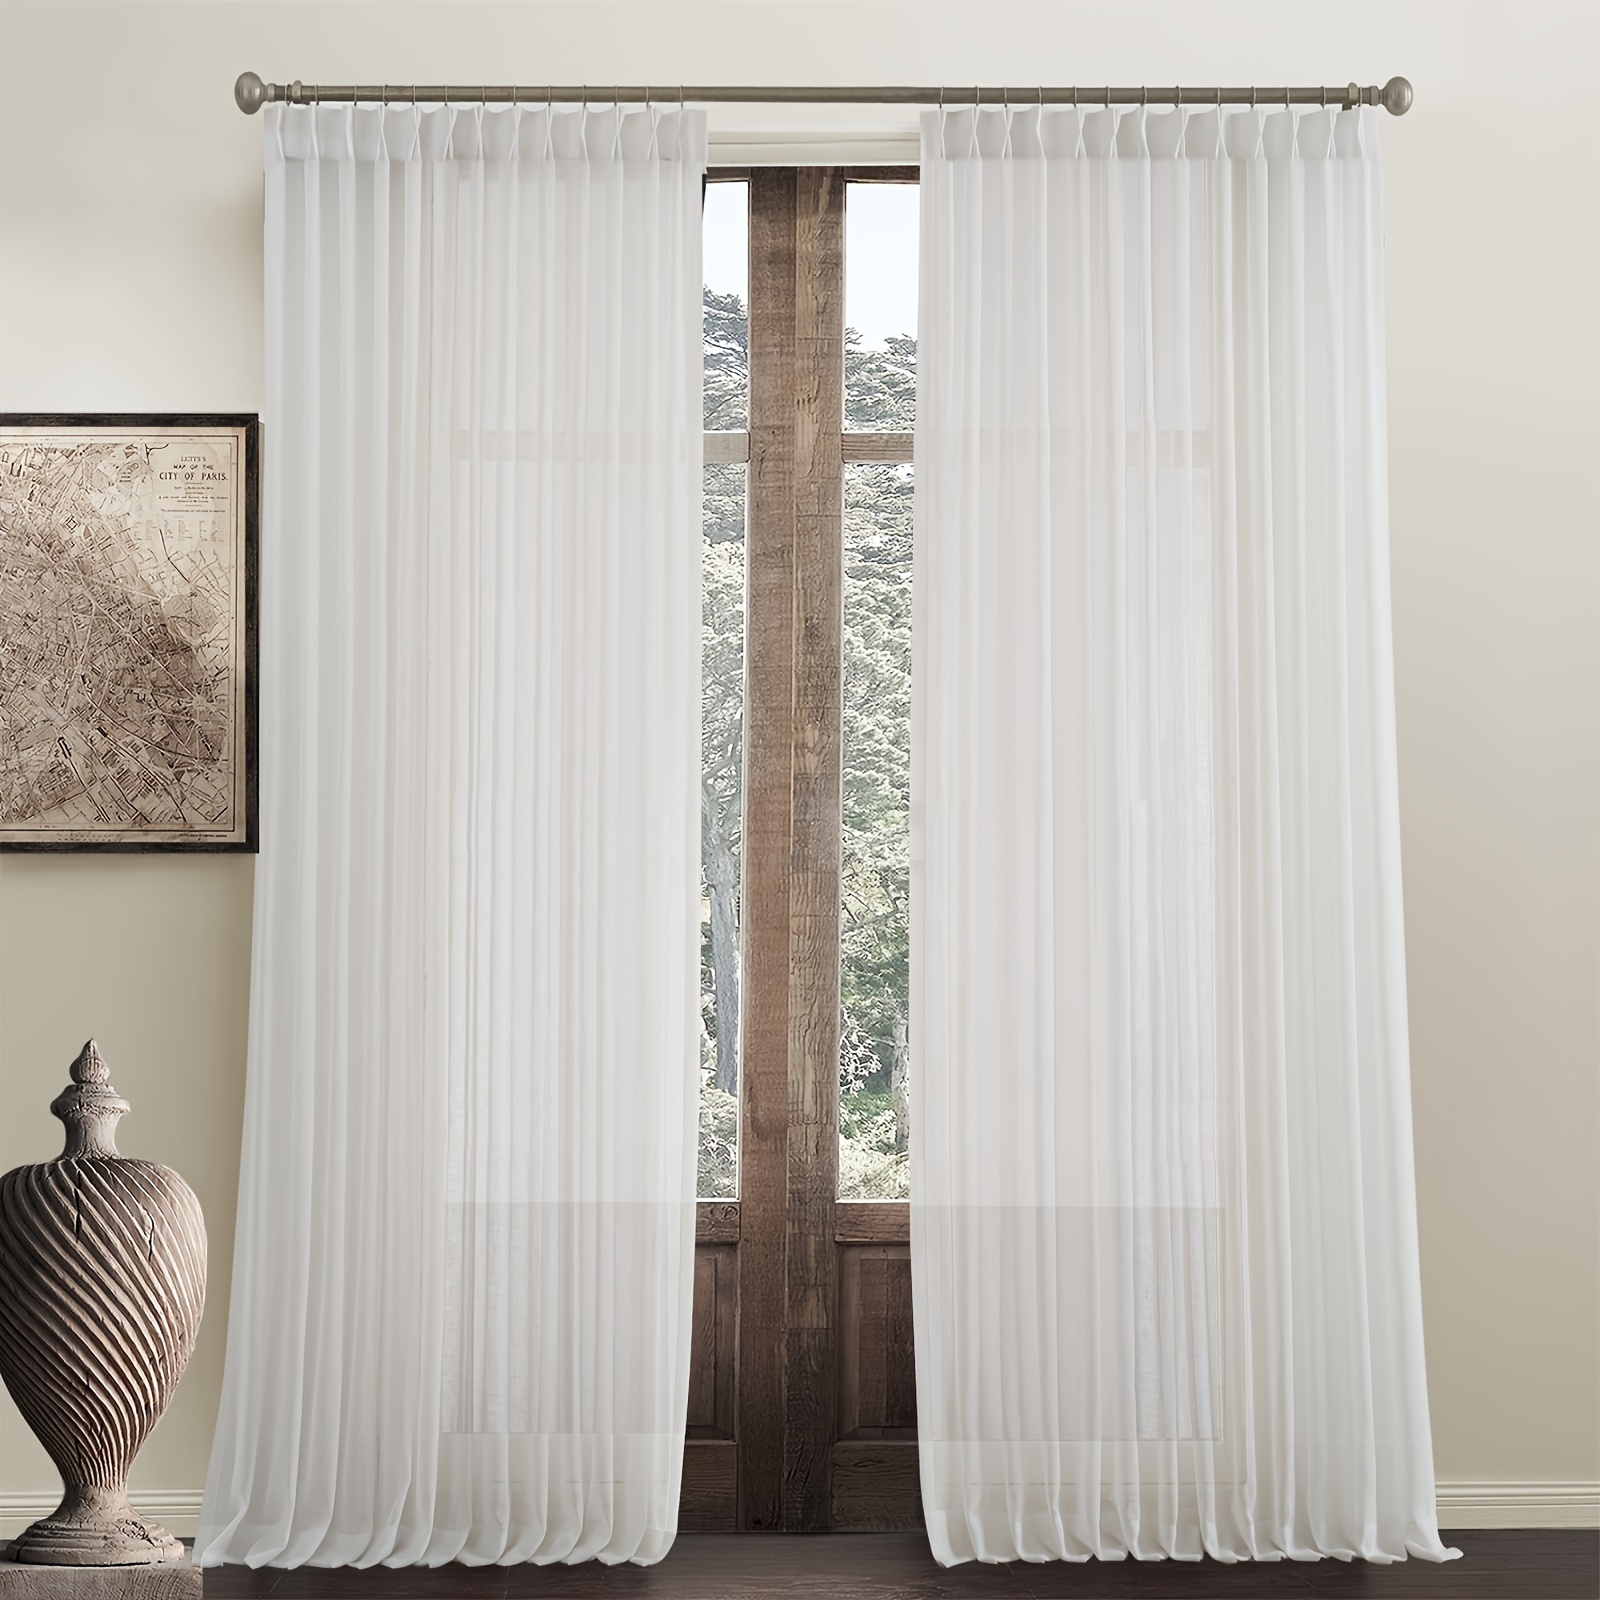 Cortinas de encaje bordadas blancas – Cortinas semitransparentes de  privacidad para sala de estar, dormitorio, balcón, filtrado de luz, ligeras  y